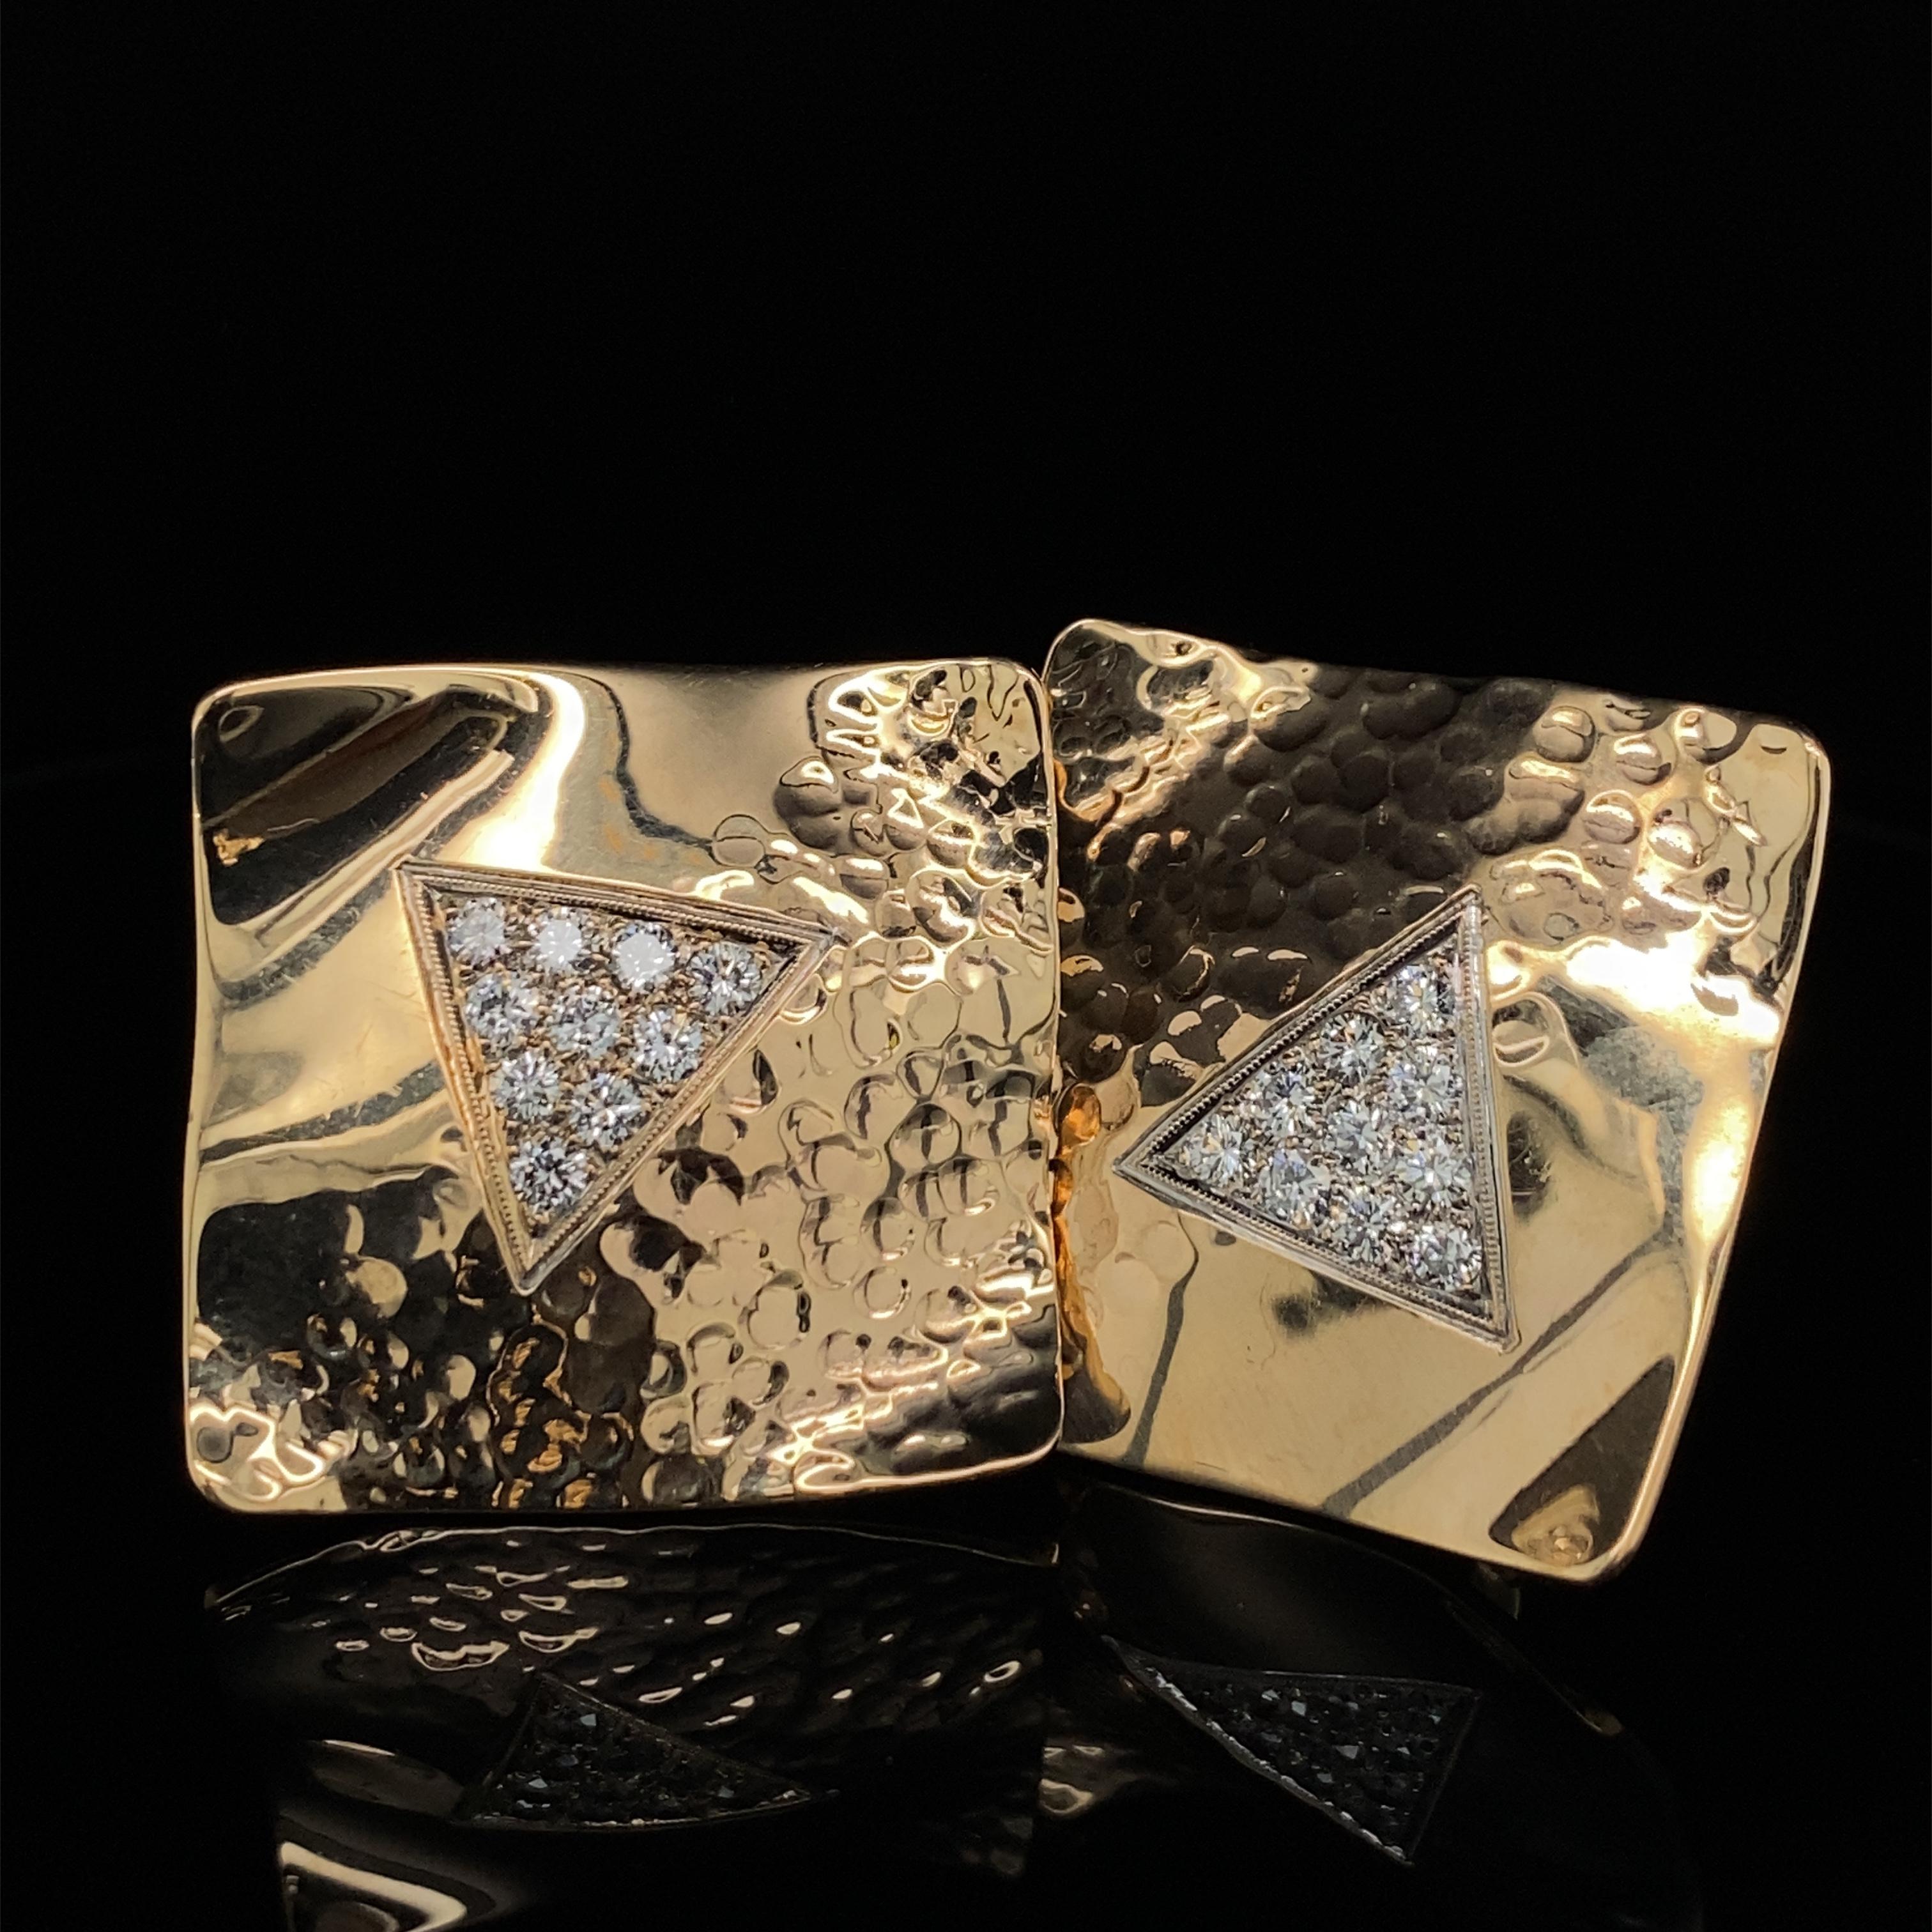 Diese kühnen, geometrischen und einzigartigen Ohrringe bestehen aus quadratischen, leicht gewellten Platten aus reinem 14-karätigem Gelbgold mit einer gehämmerten Textur auf einer Seite und einem Dreieck mit Diamantpavé in der Mitte.  

Jedes